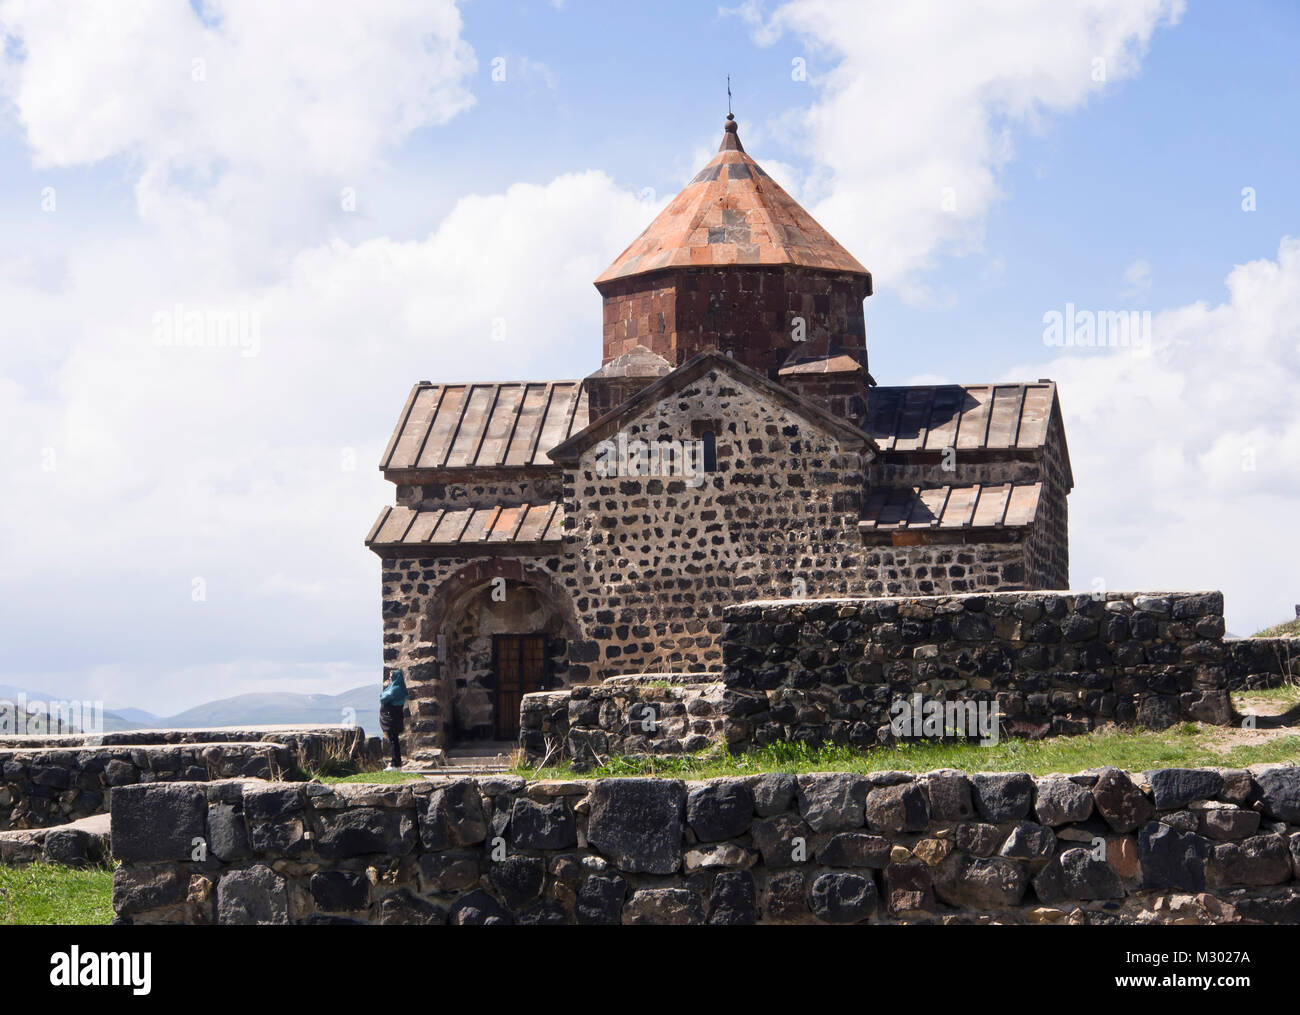 Monasterio de Sevanavank en una península en el lago Sevan en Armenia, un atractivo turístico muy visitado con importancia histórica y religiosa Foto de stock